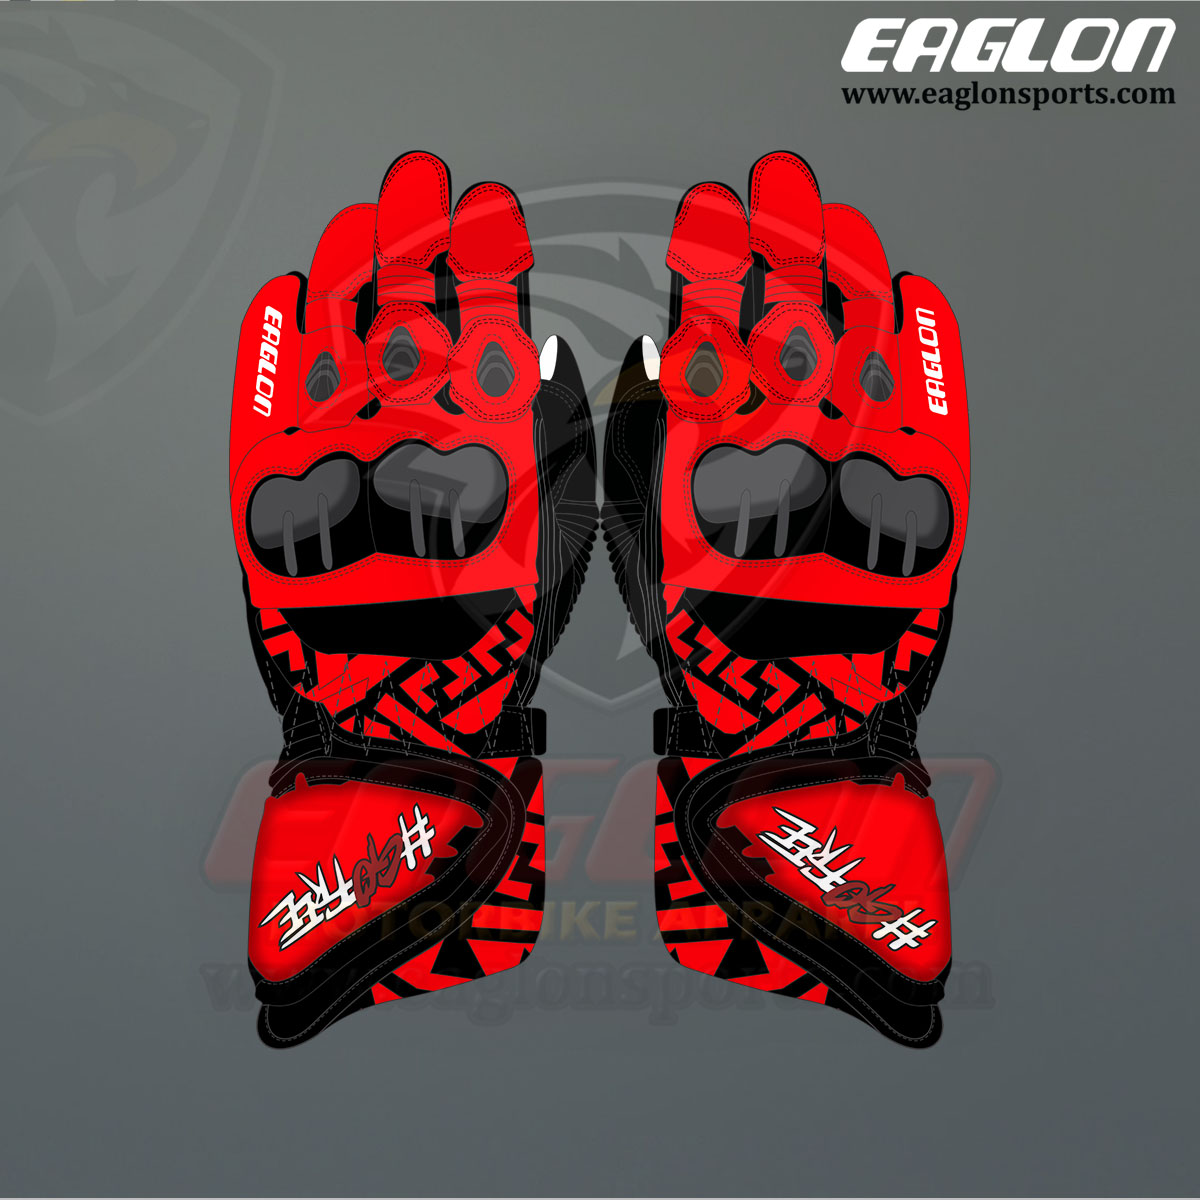 Francesco-Bagnaia-Ducati-MotoGP-2022-Leather-Race-Gloves